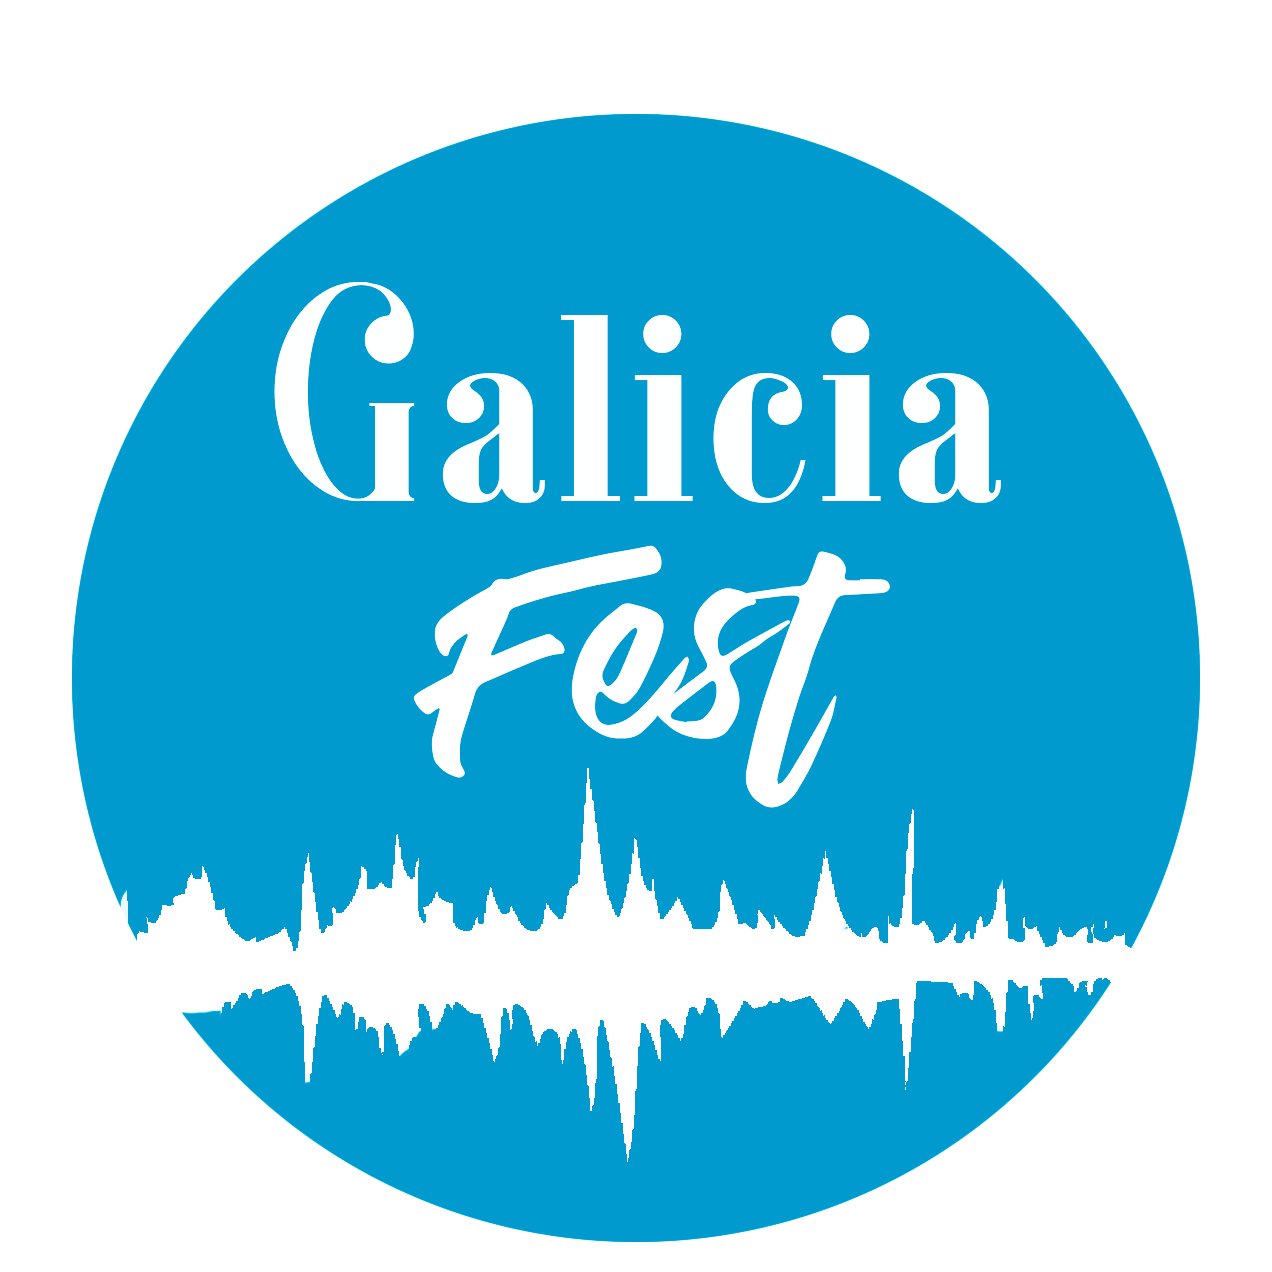 Buscamos dar unha maior visibilidade aos festivais de música existentes en Galicia e mellorar a interacción e coñecemento do público con eles 🎧 #GaliciaFest